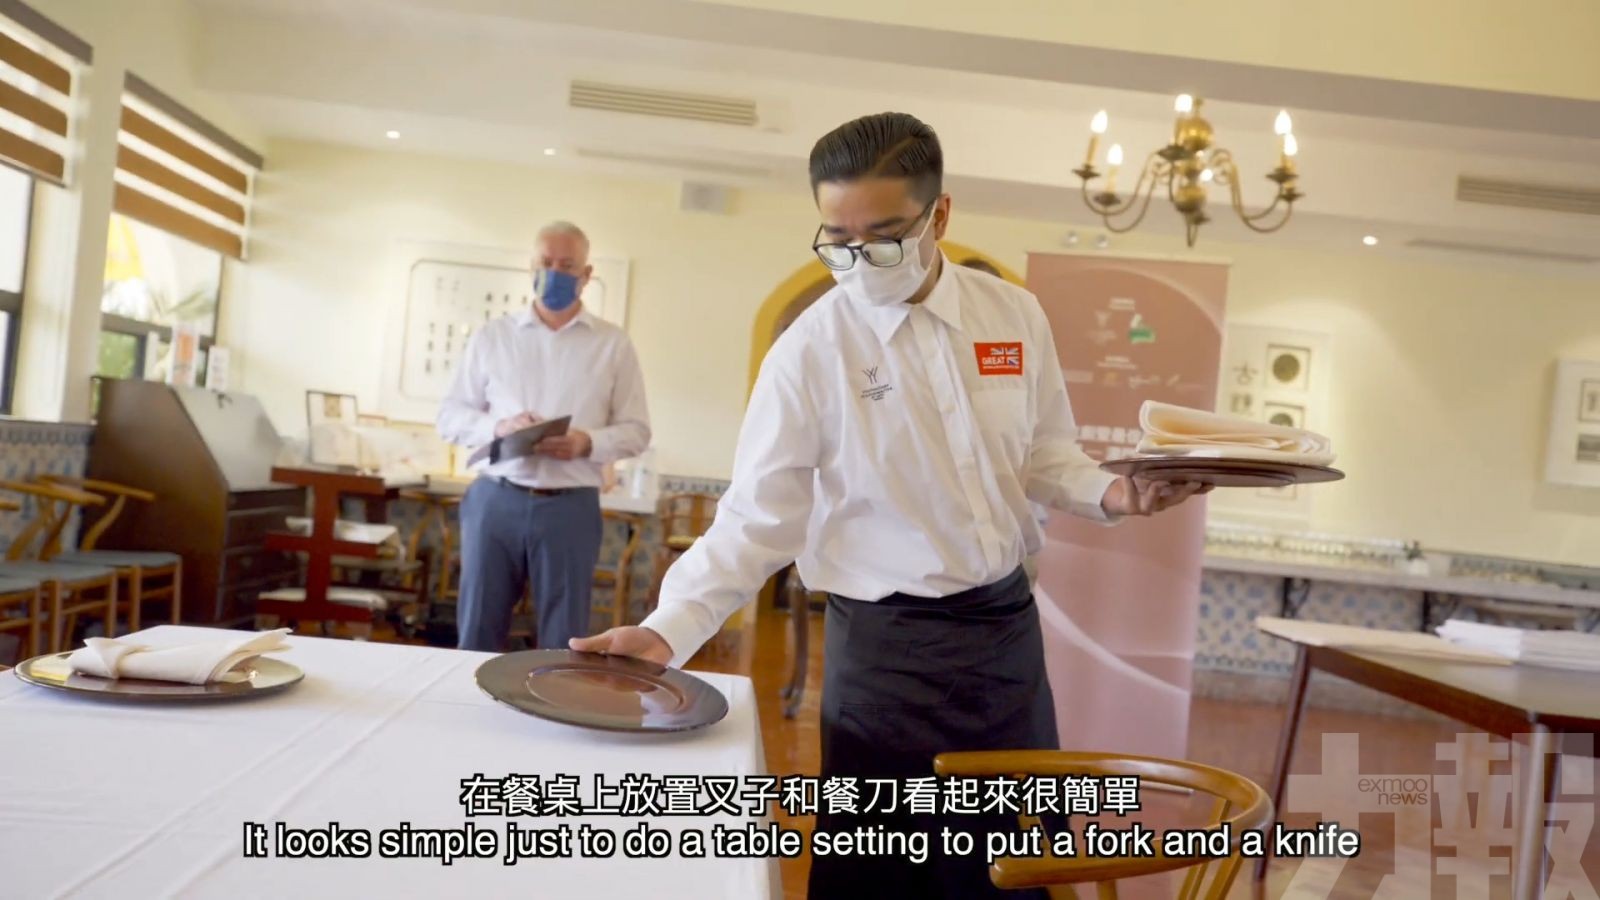 旅局製短片宣傳澳門美食文化